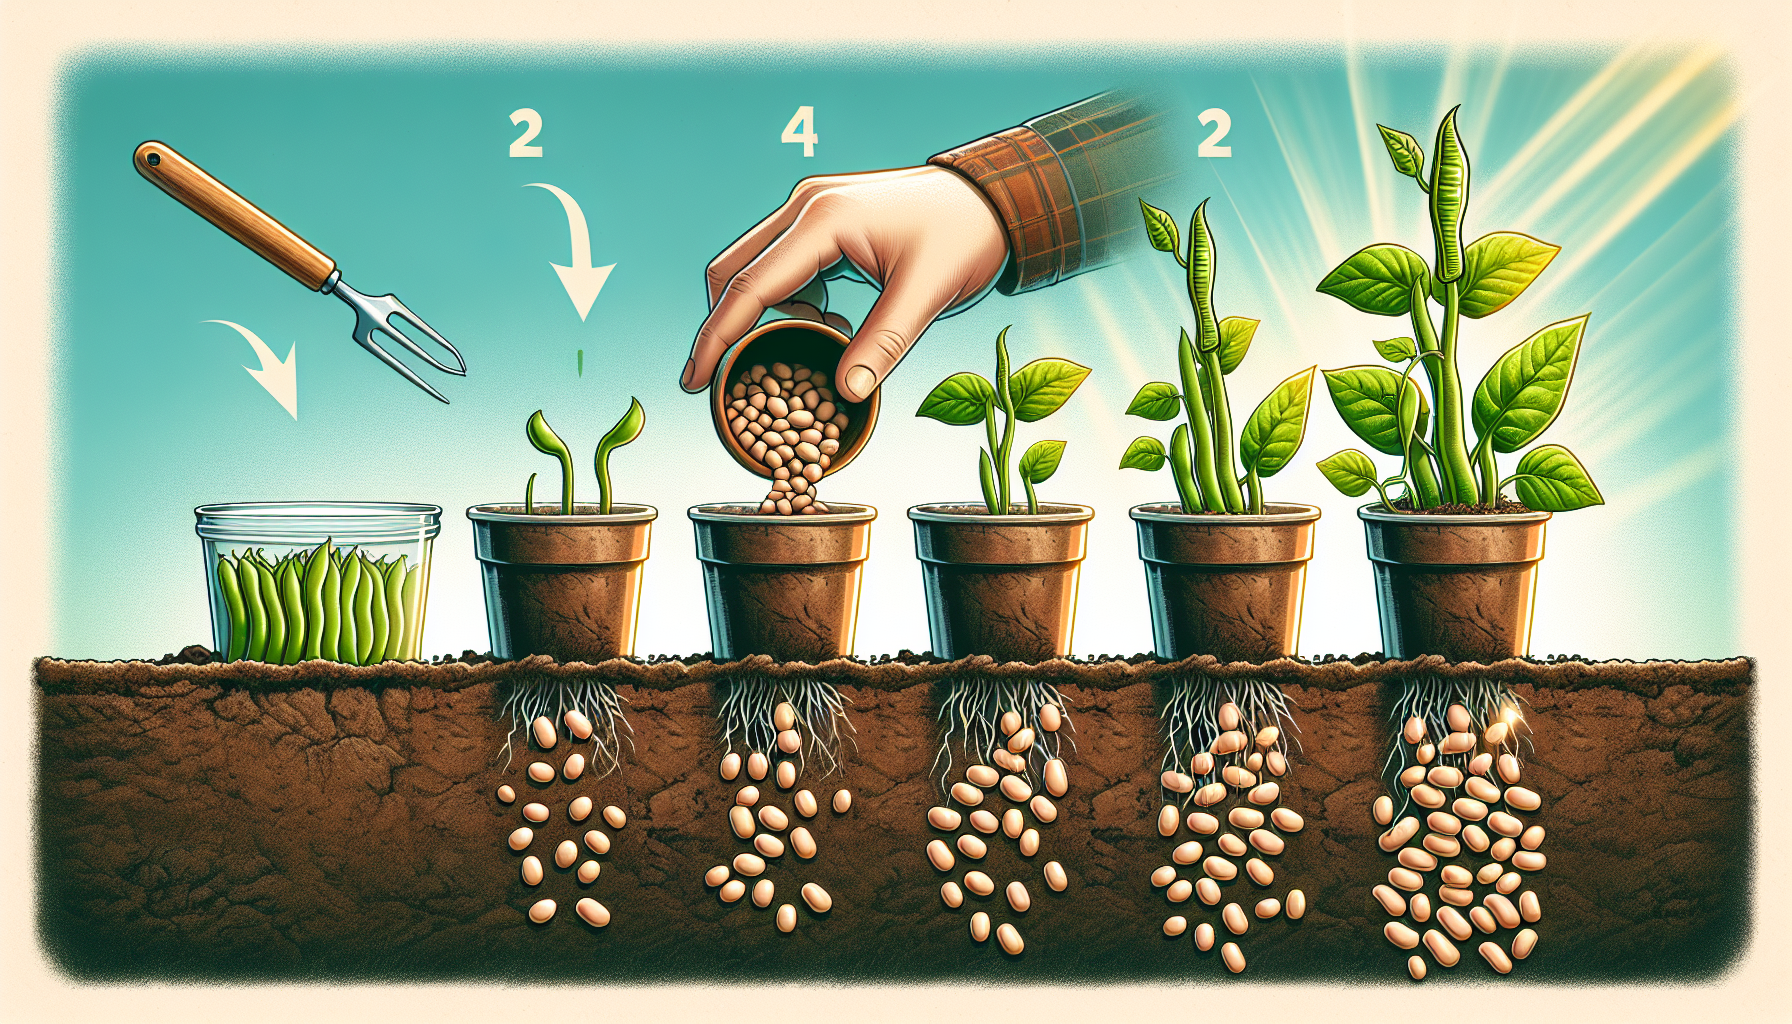 découvrez la méthode secrète pour réussir vos semis de haricots verts et obtenir une récolte abondante grâce à nos conseils pratiques !